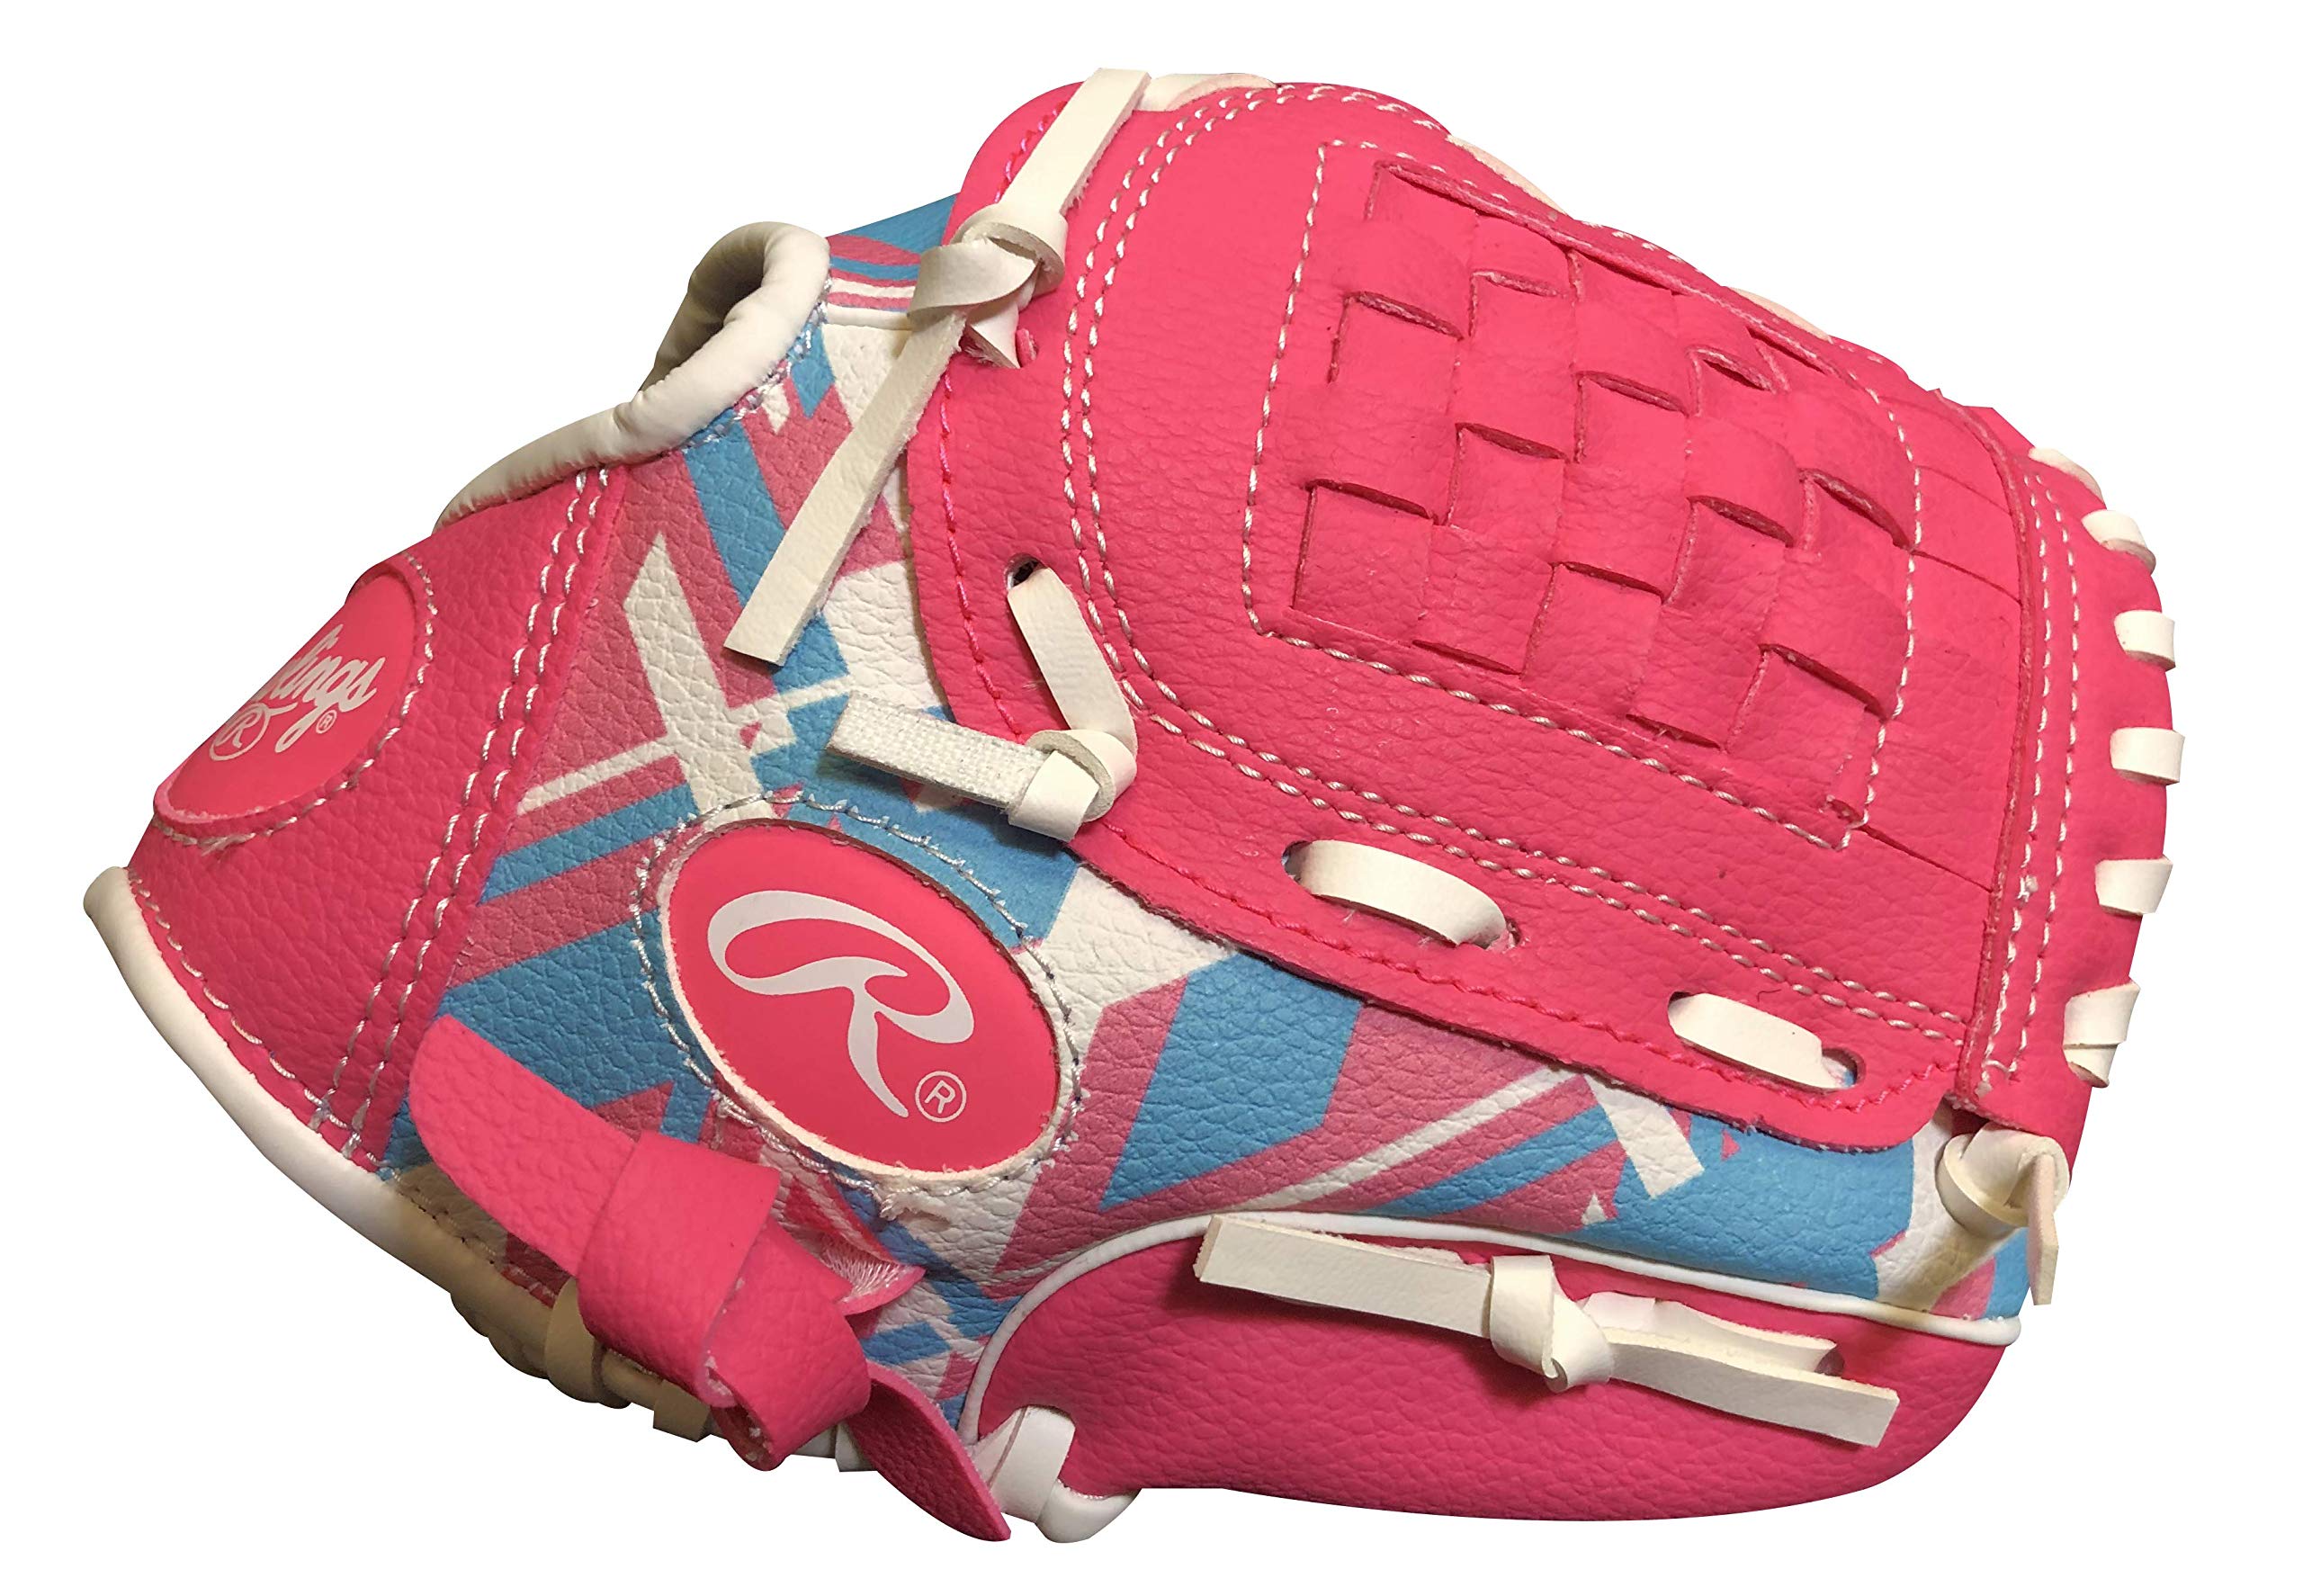 Rawlings | Remix T-Ball & Youth Baseball/Softball Glove | Sizes 9" - 10.5",Pink